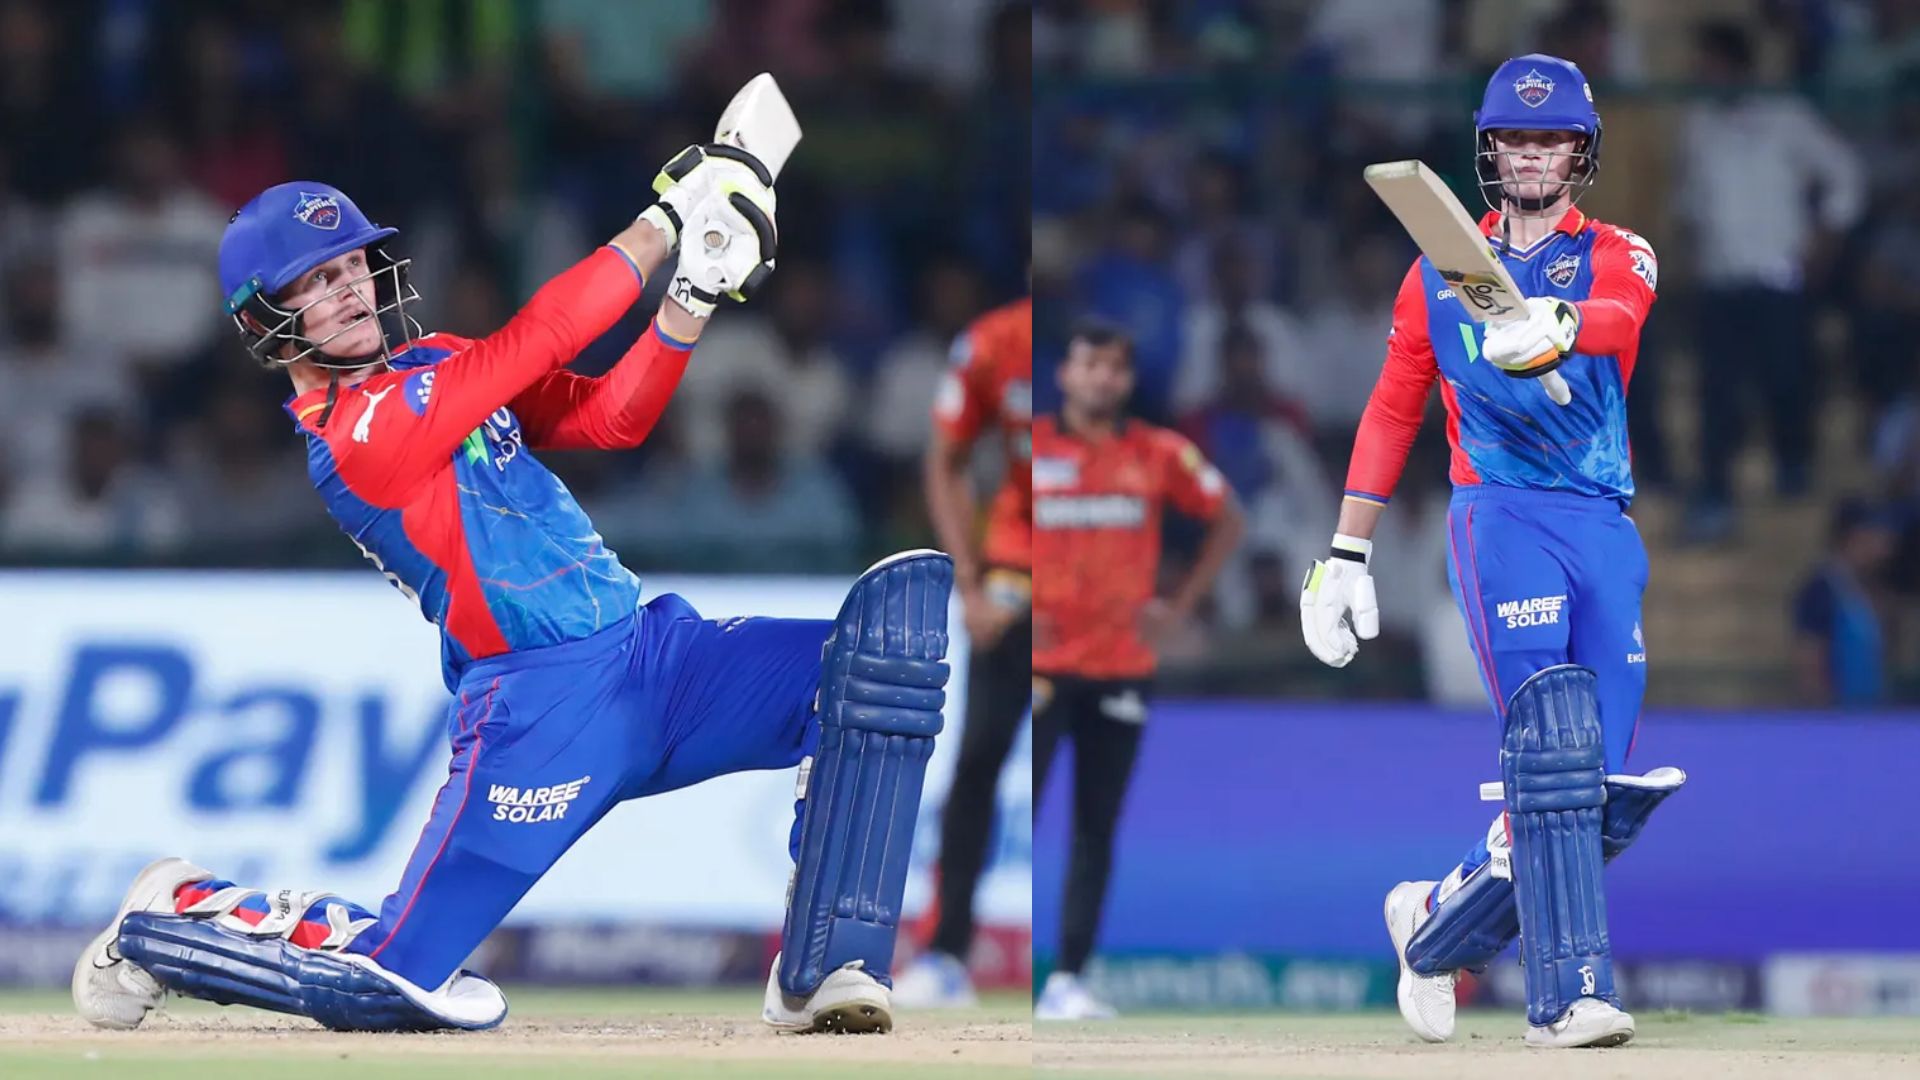 18 गेंदों में ठोके 65 रन, दिल्ली कैपिटल्स के खिलाड़ी ने बनाया अनूठा रिकॉर्ड